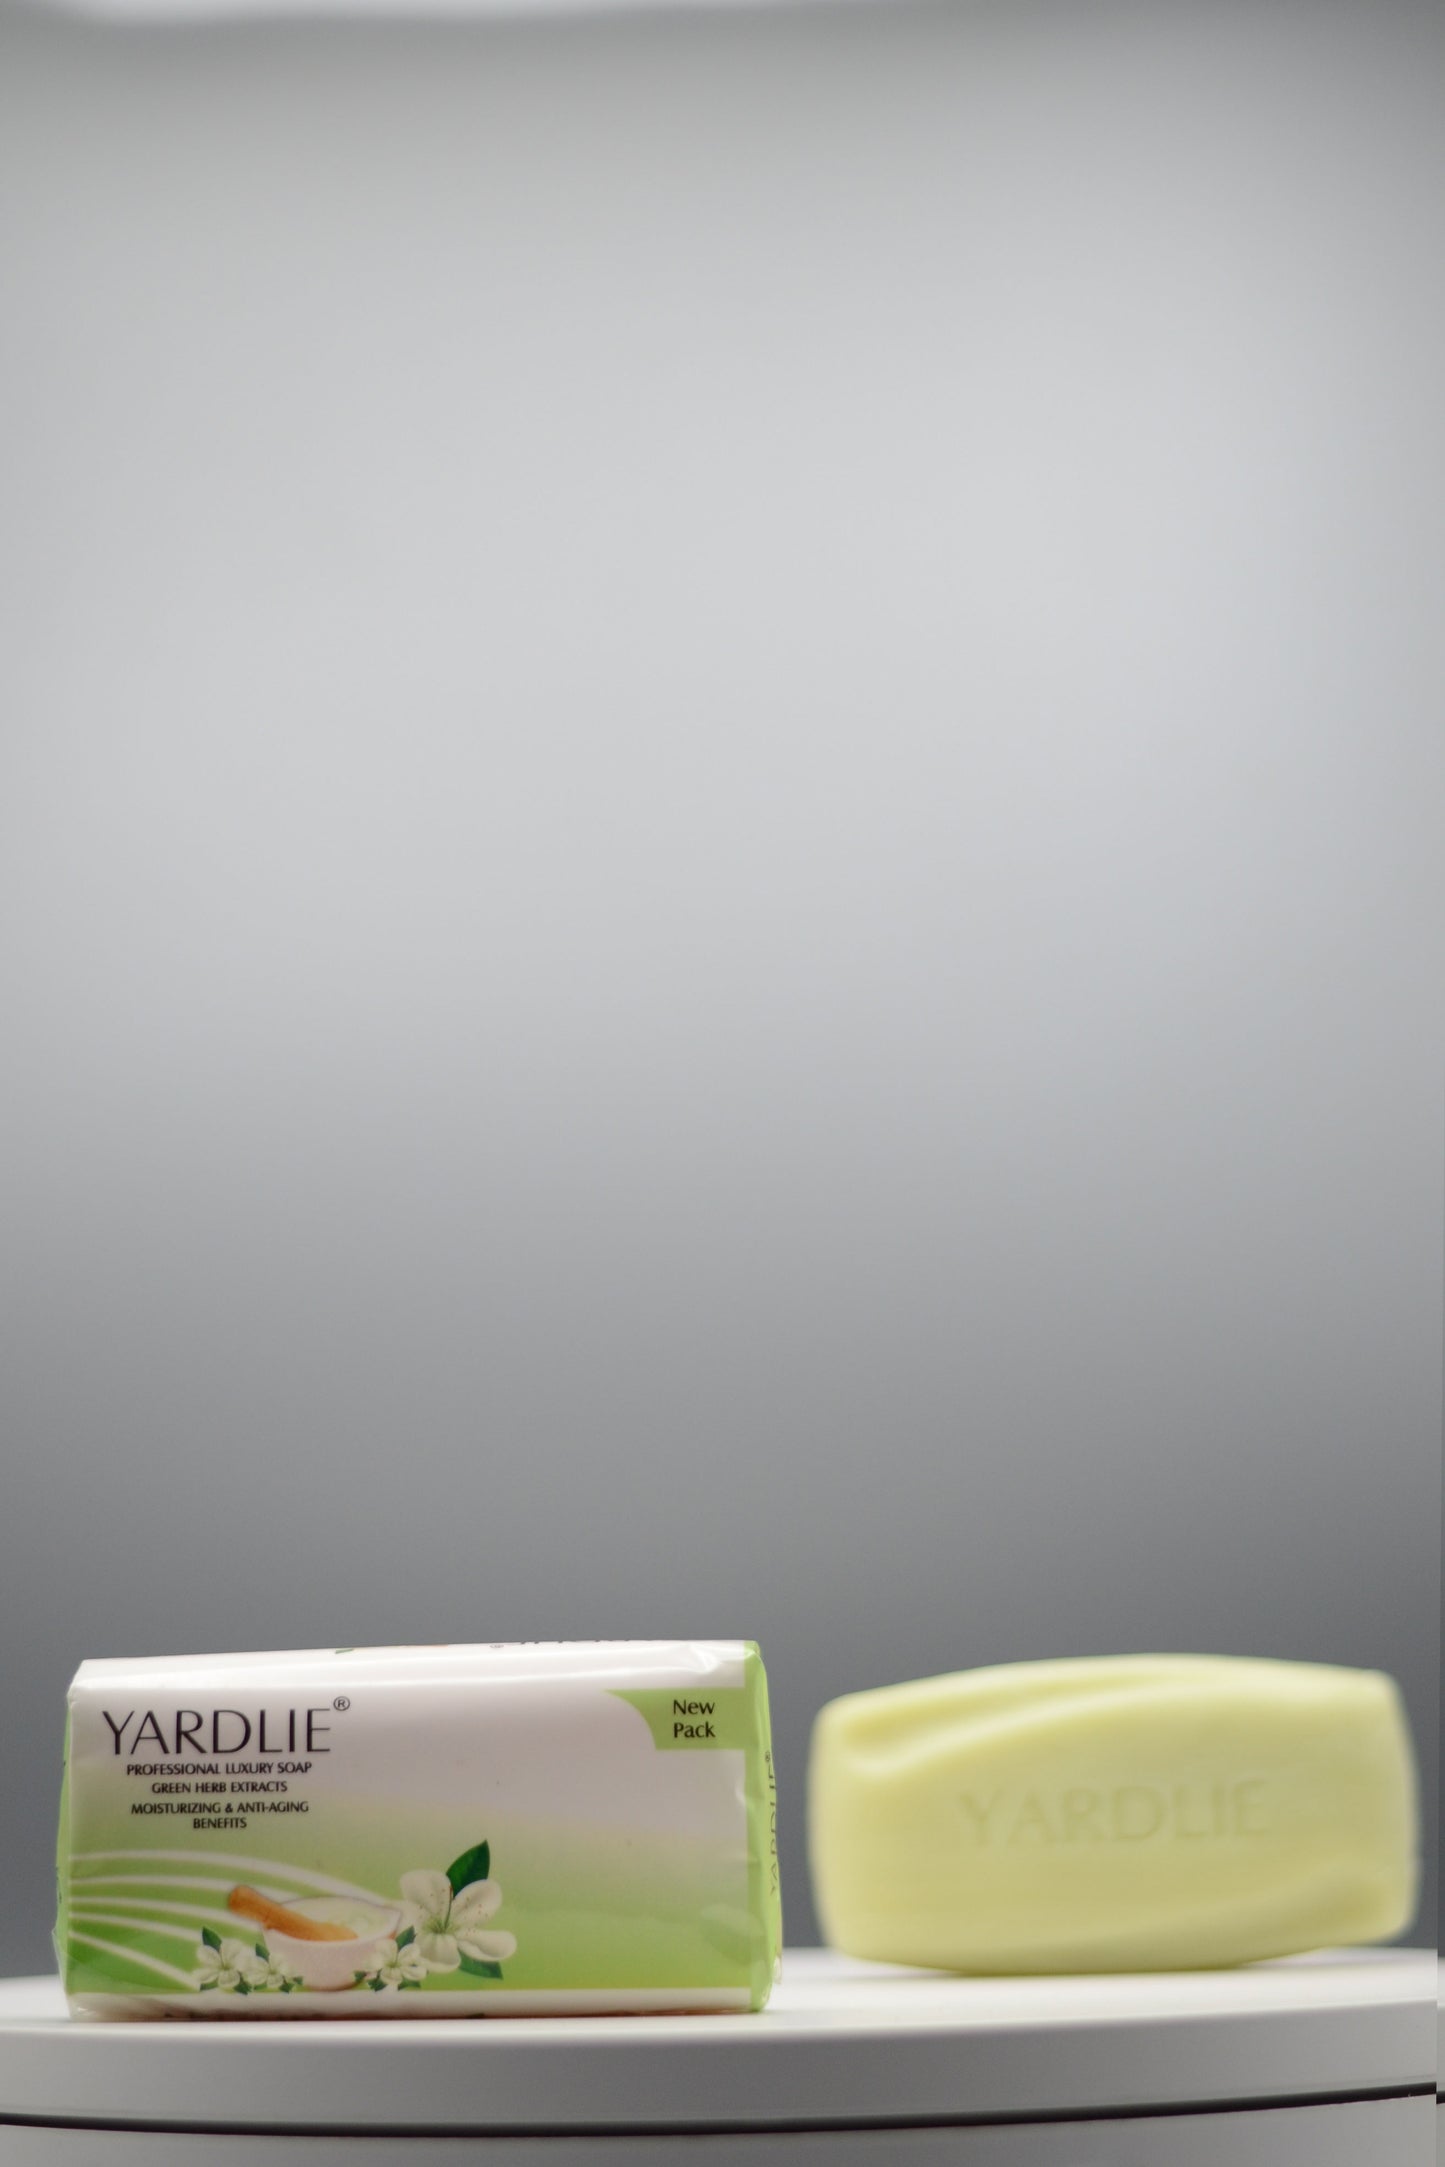 Yardlie Professional Luxury Soap.